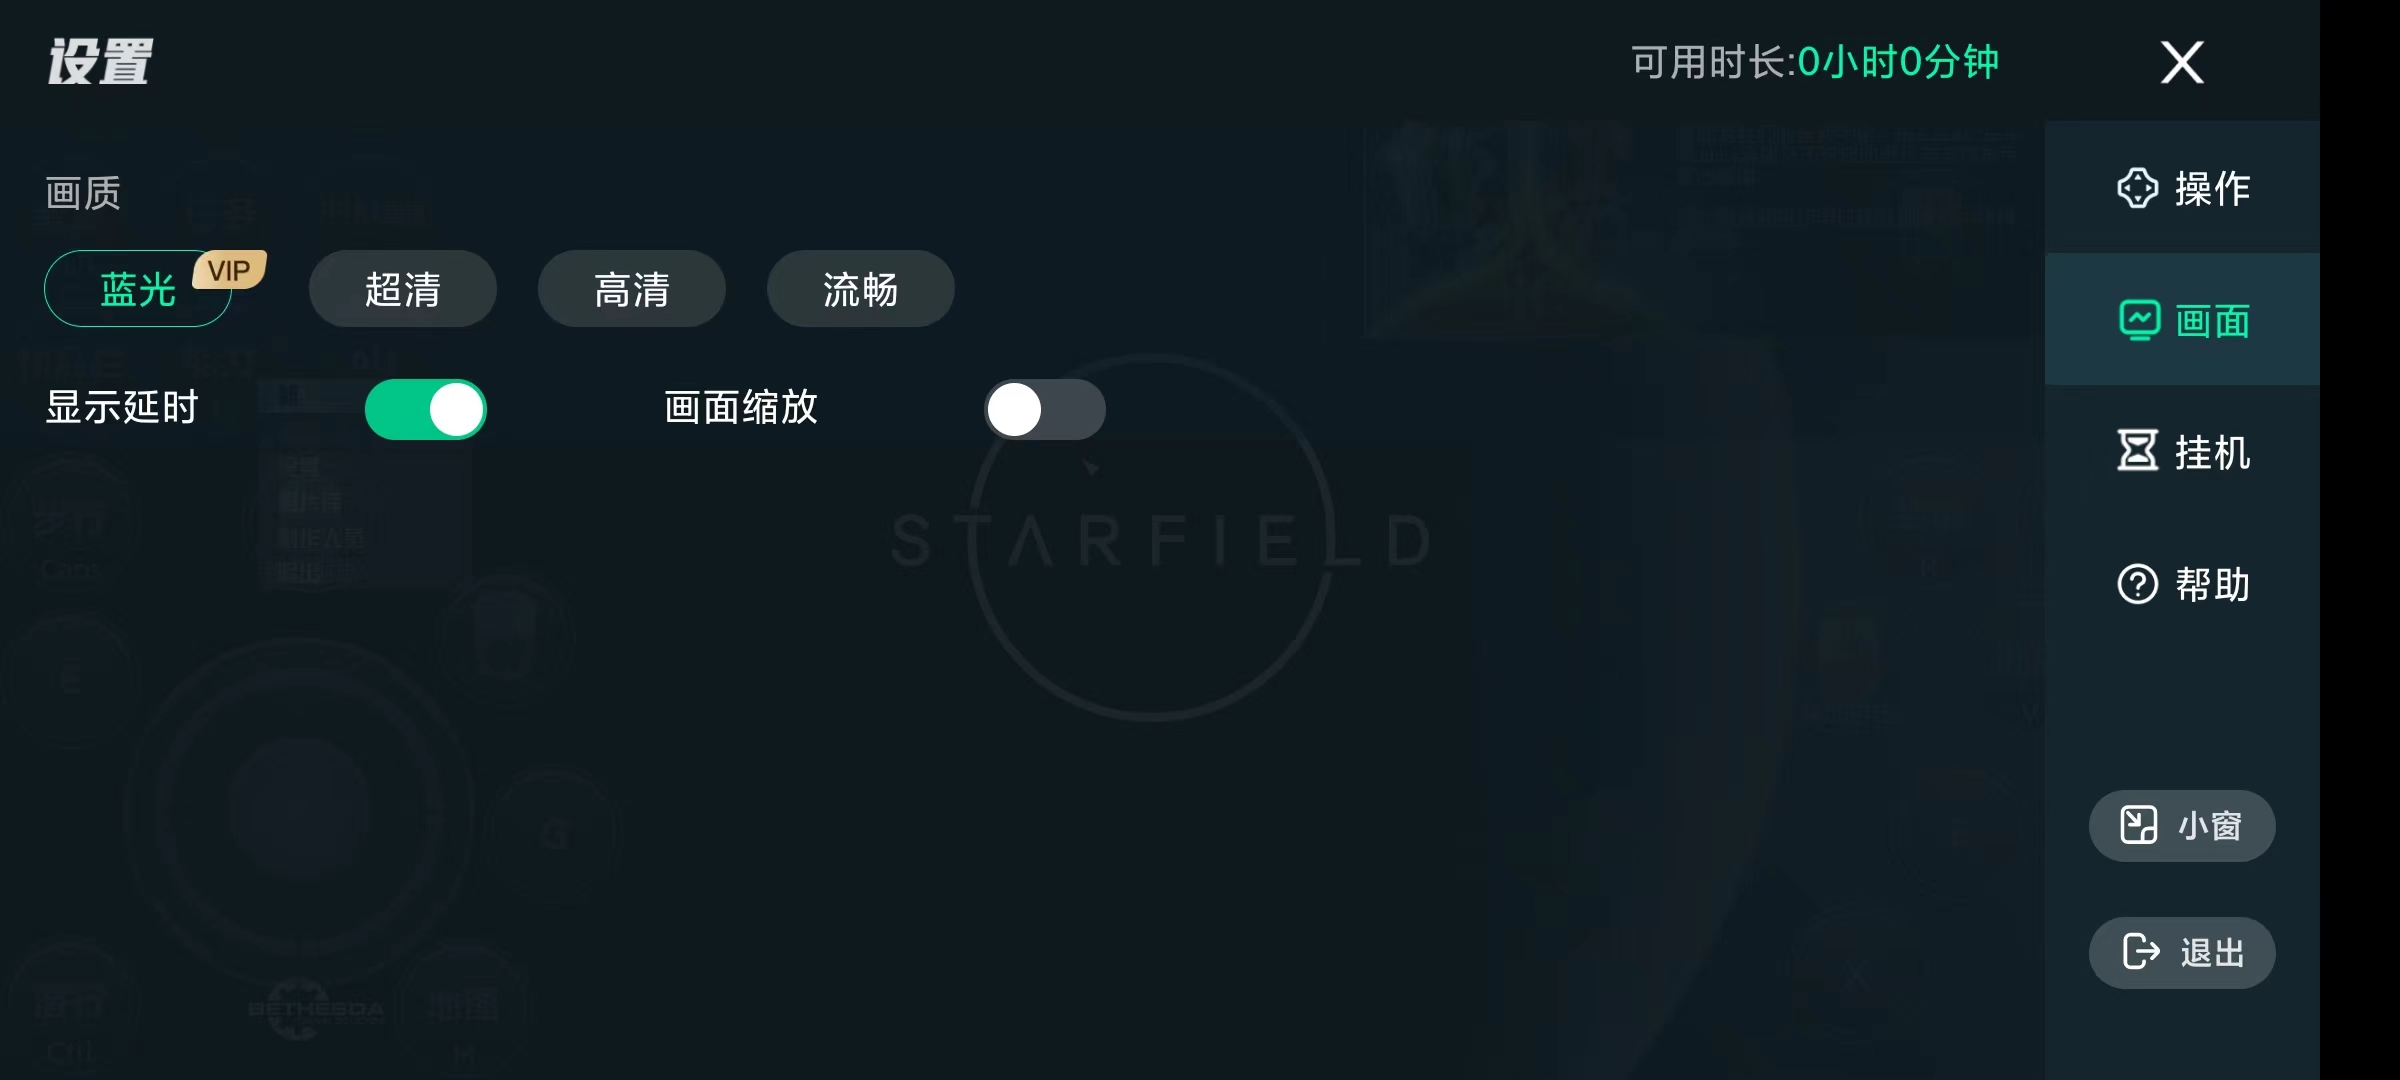 YOWA云游戏2.8.15解锁会员手机畅玩steam 屠城辅助网www.tcfz1.com8774